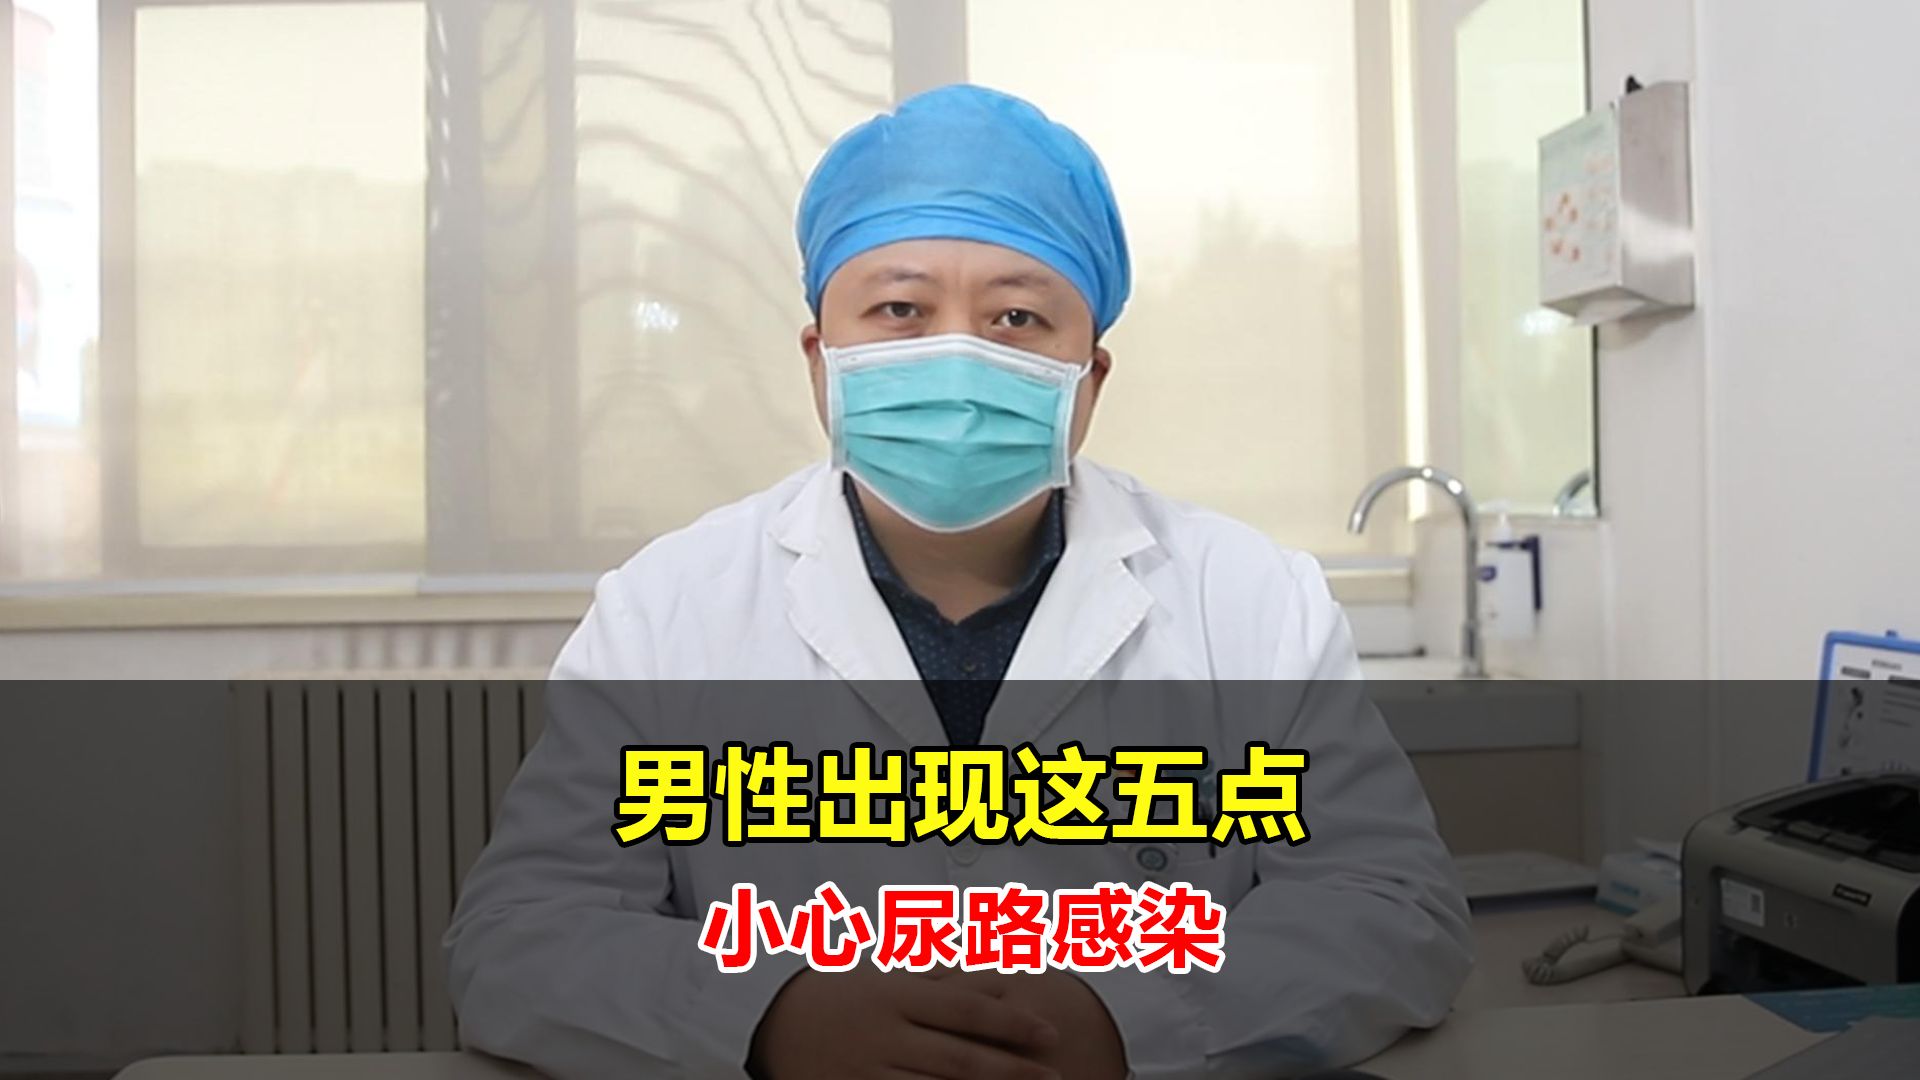 尿路感染症 UTI: urinary tract infection│医學事始 いがくことはじめ